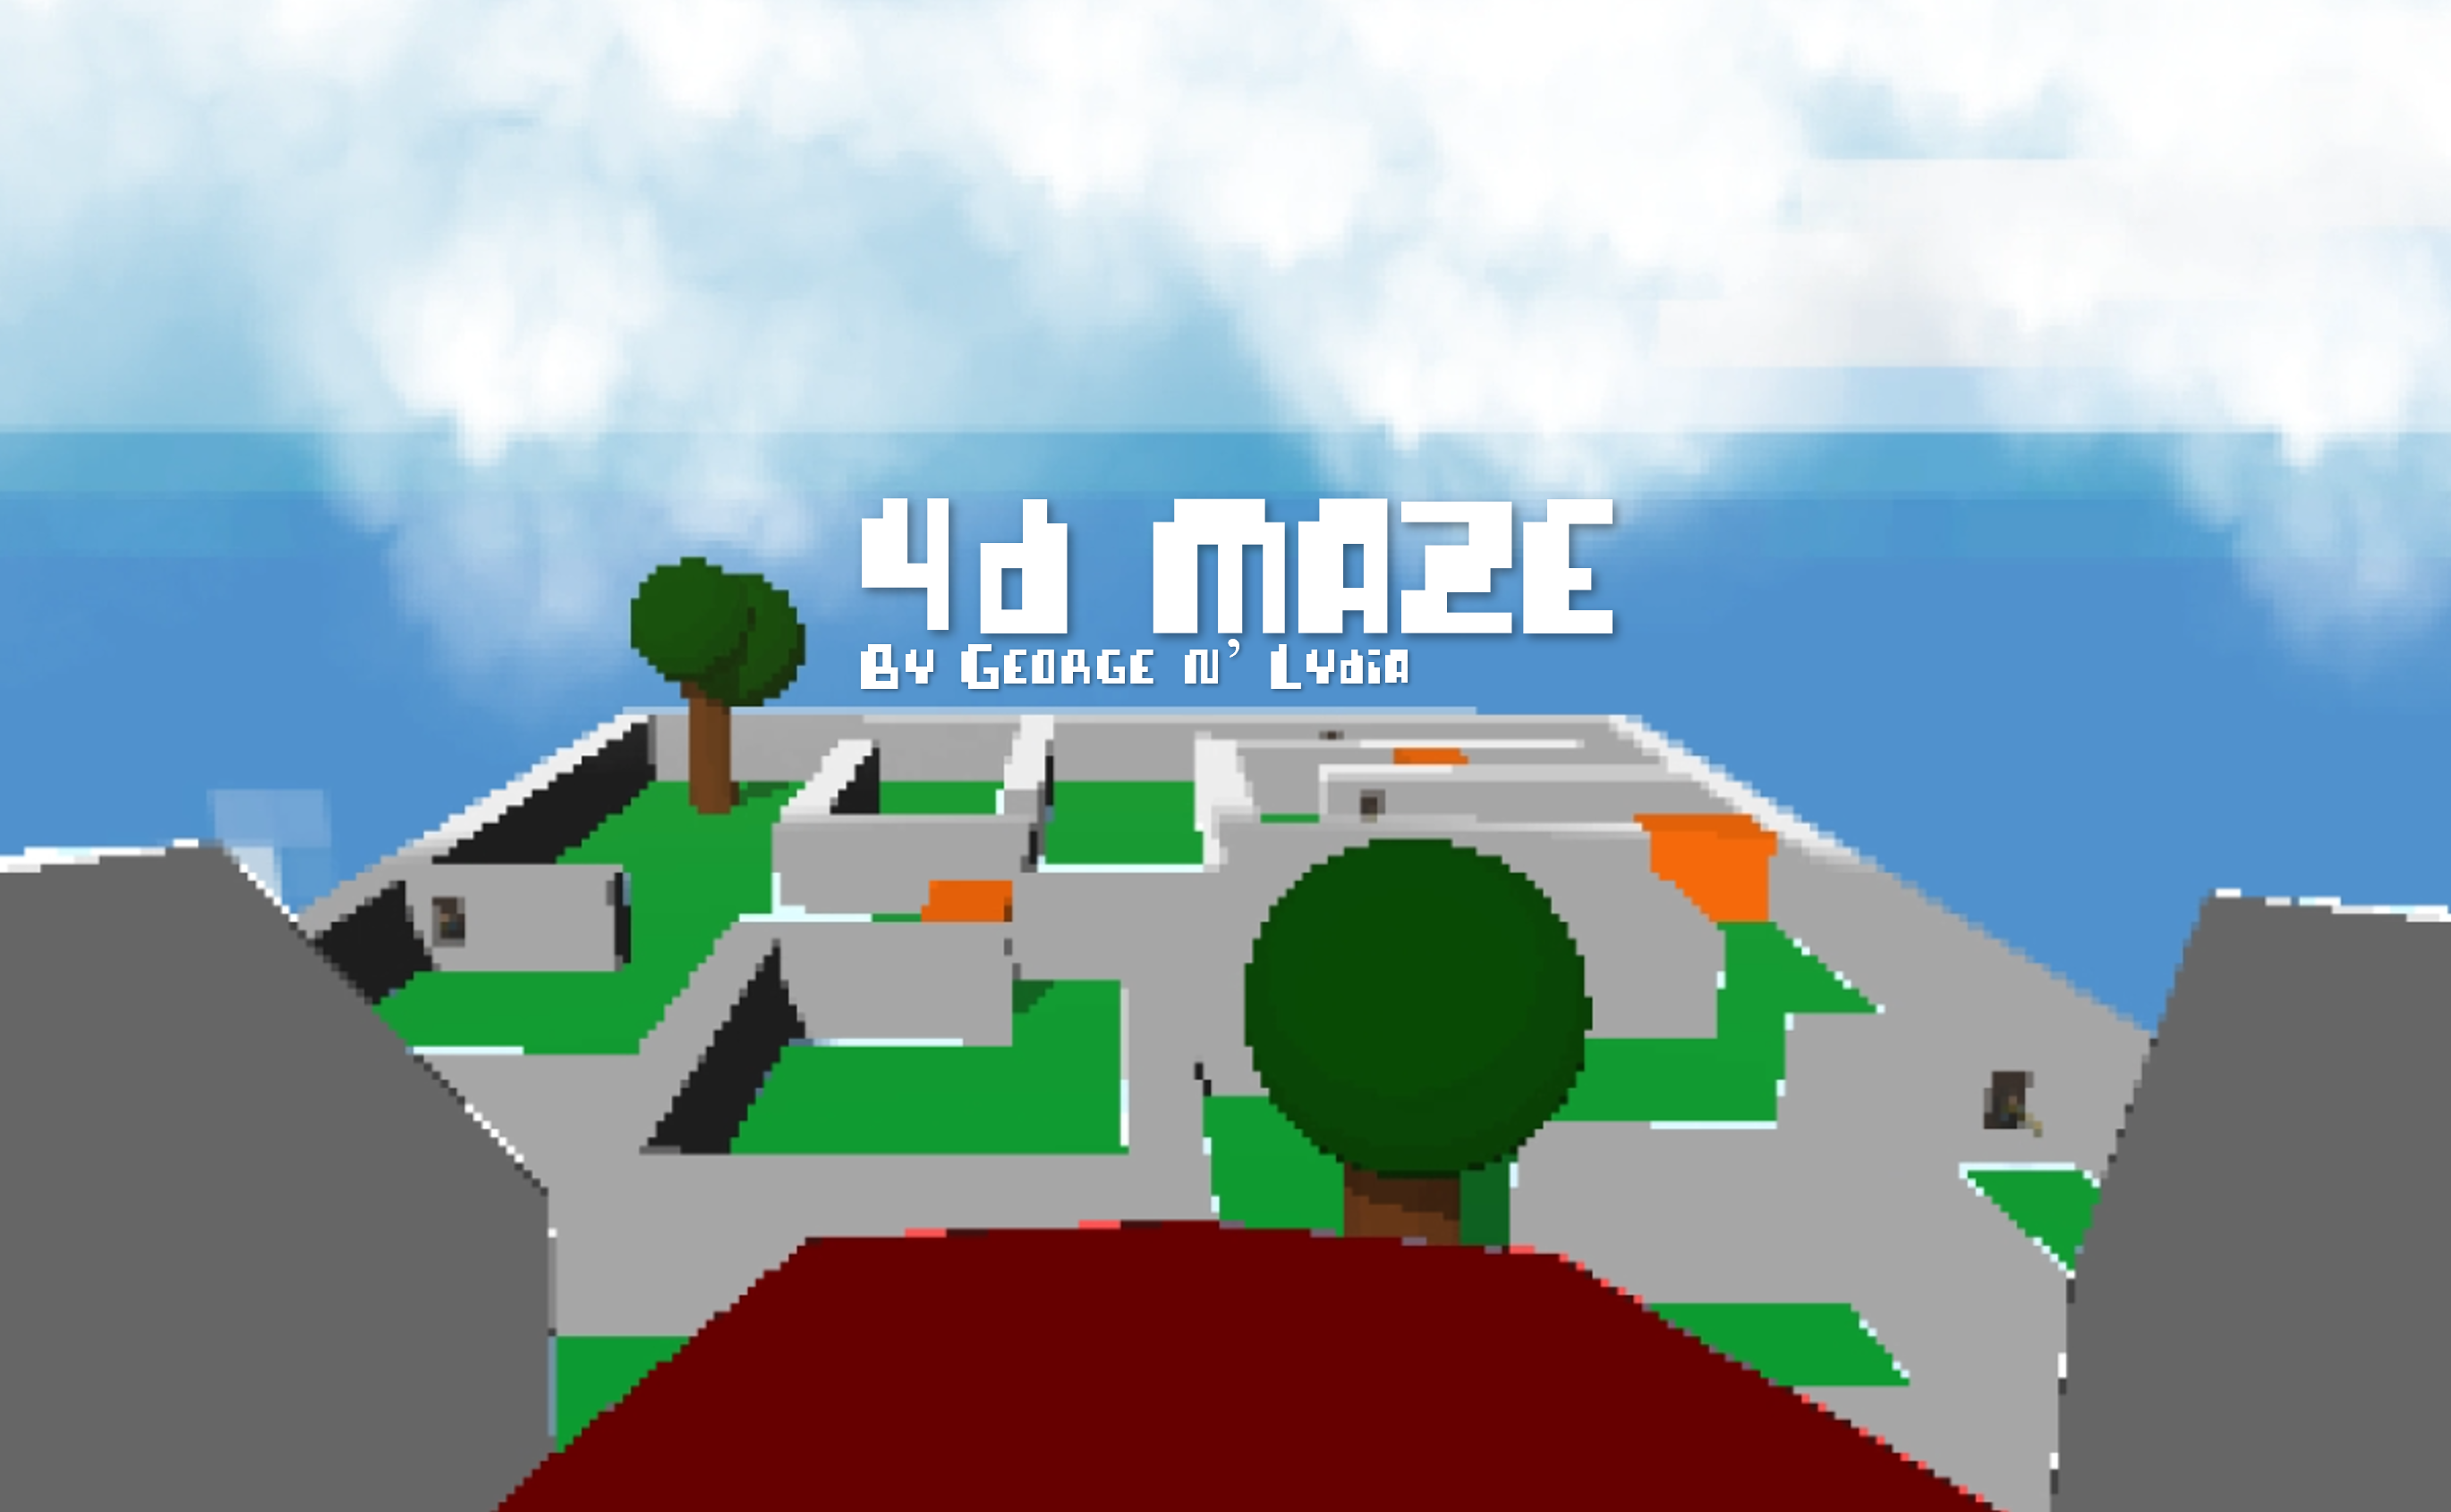 4D Maze